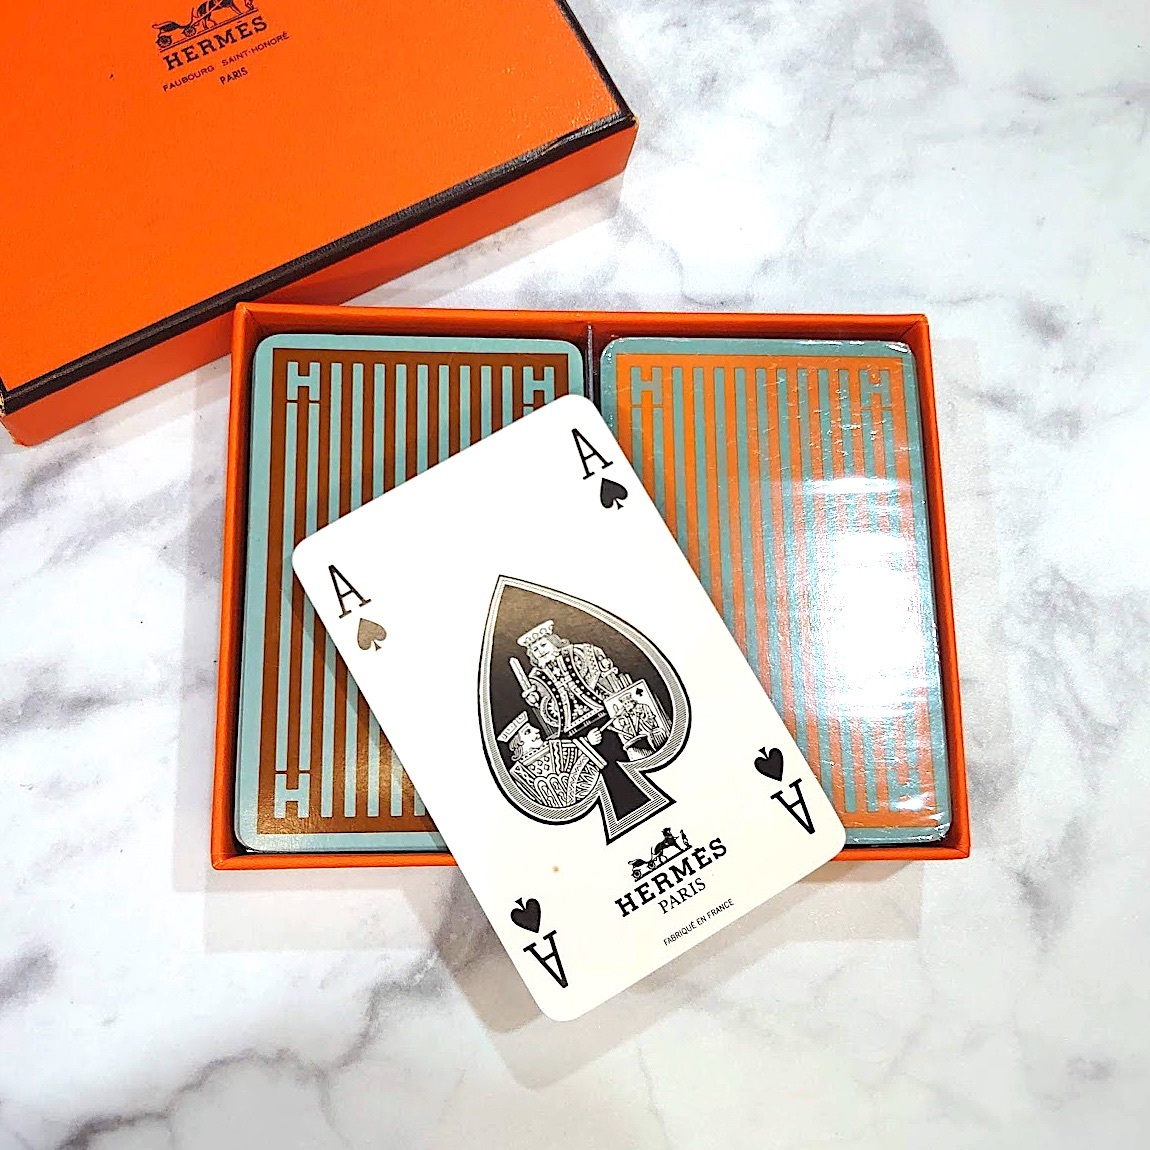 [ почти не использовался ]HERMES Hermes карты комплект 2 позиций комплект полоса карты стол игра оттенок коричневого orange серия AE1263hZ